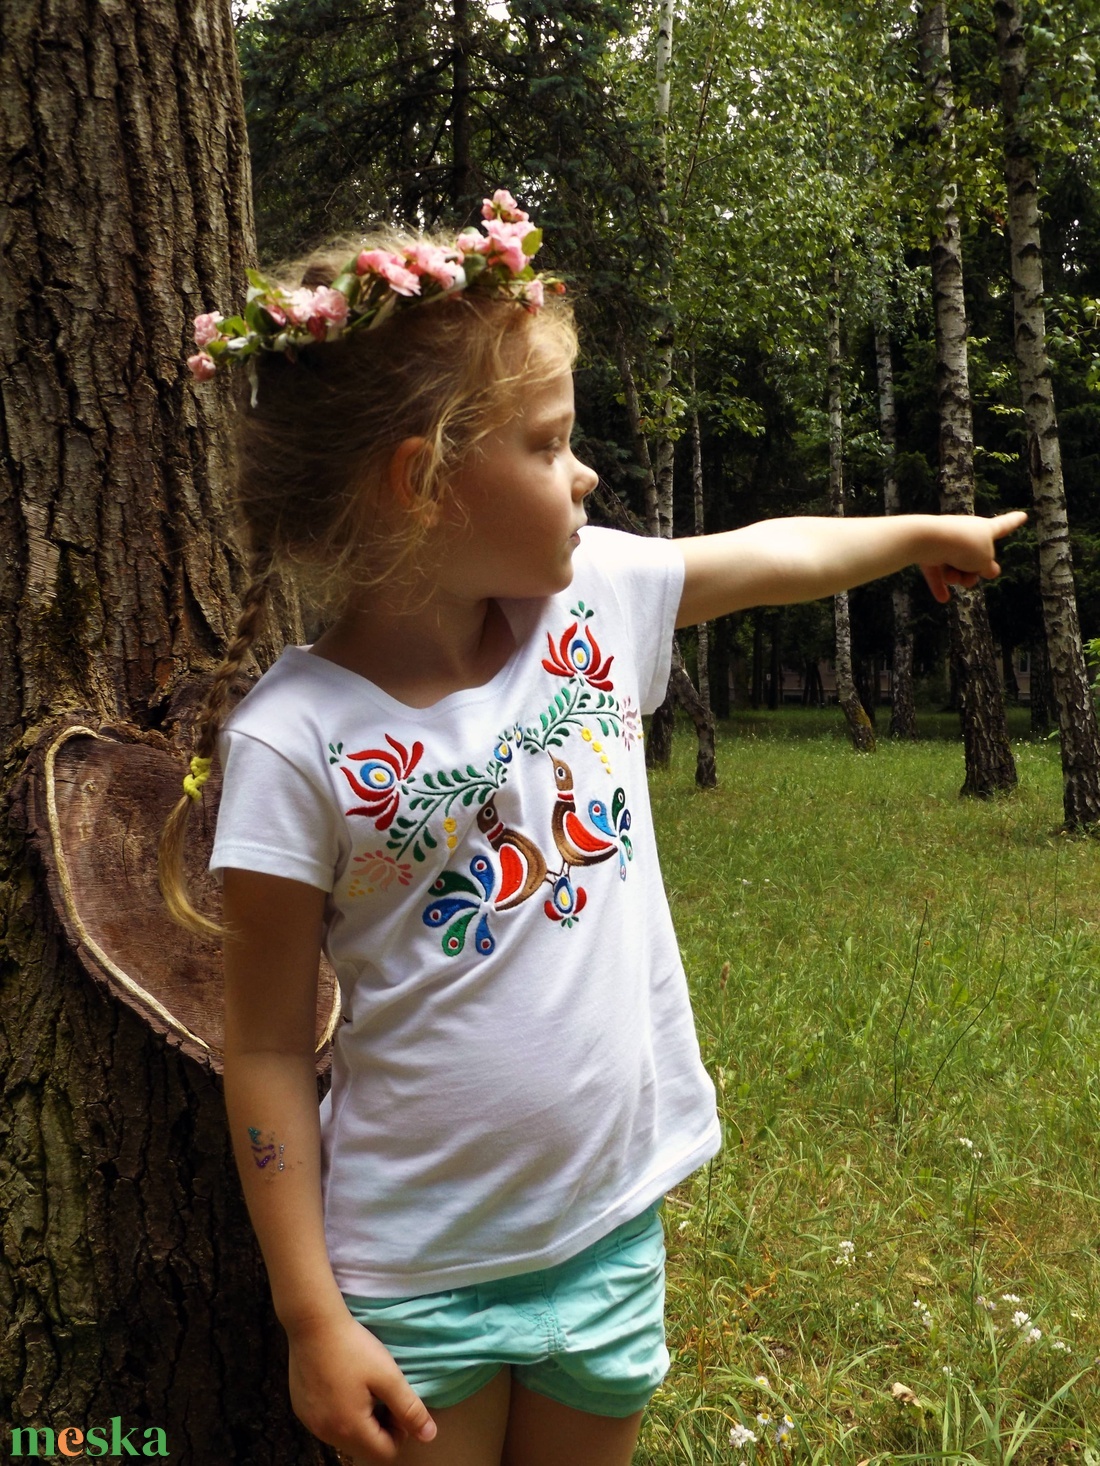 Hímzett színes madárkás kislány póló  - ruha & divat - női ruha - póló, felső - Meska.hu